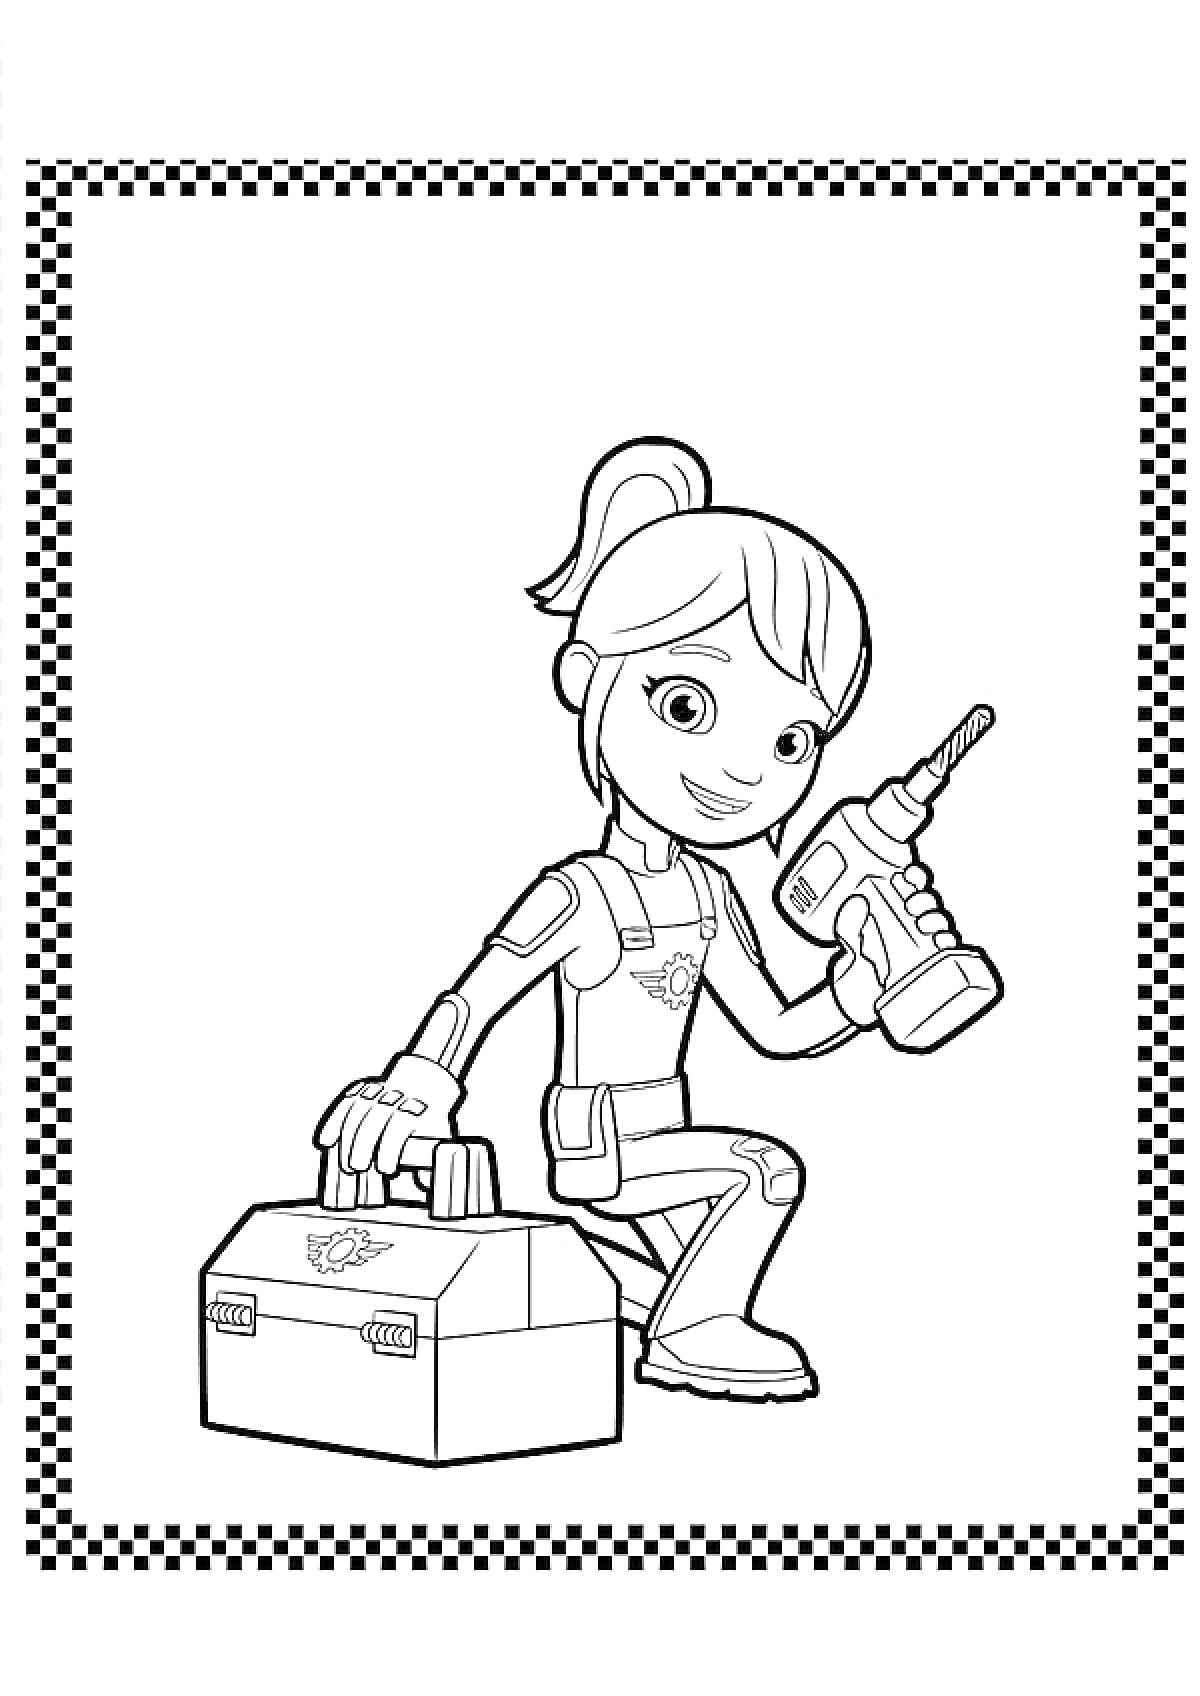 Раскраска Девочка с высоким хвостиком держит дрель и ящик для инструментов